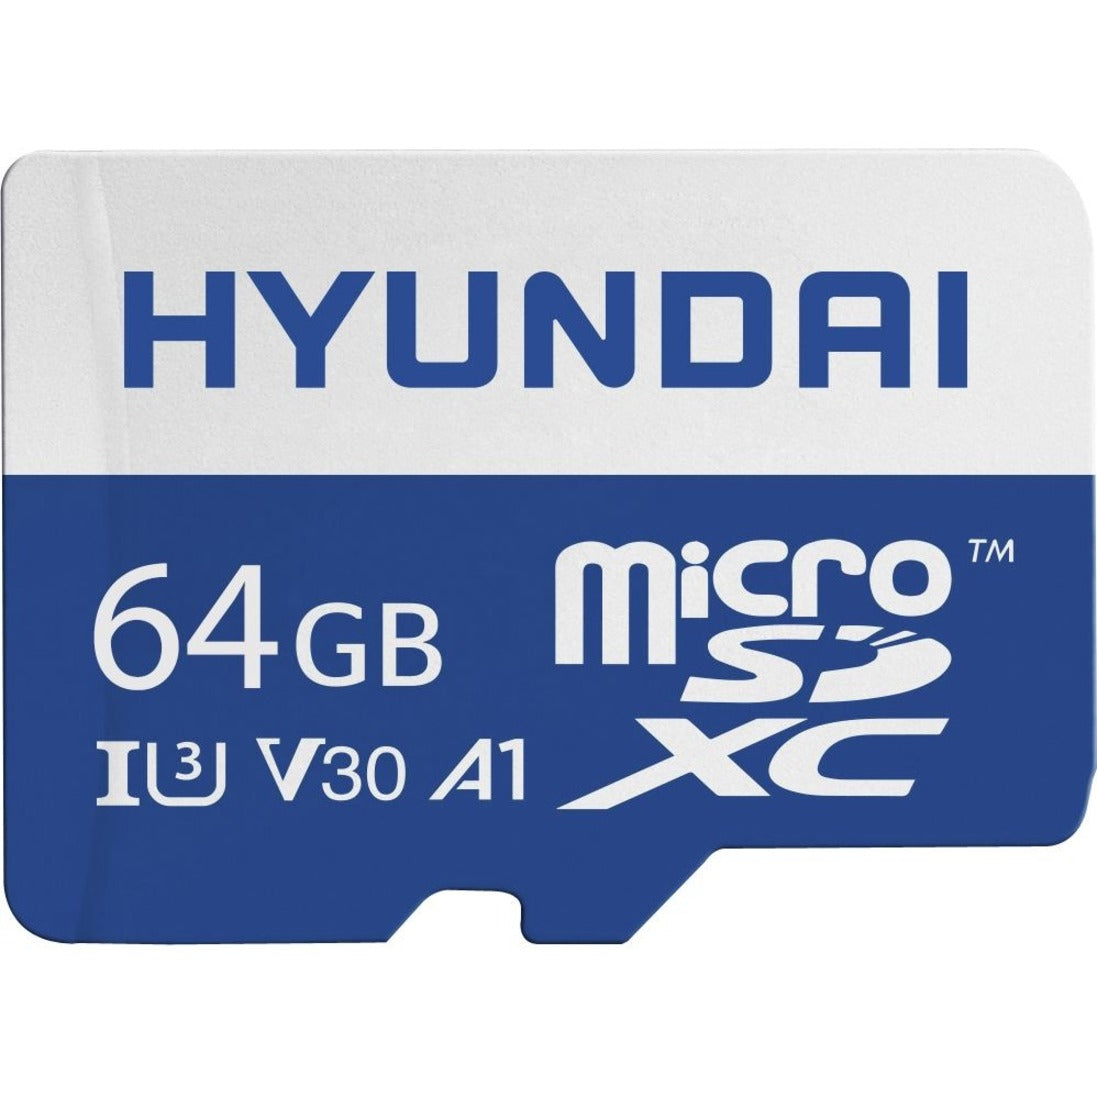 Hyundai SDC64GU3 64GB microSDXC Card, Lifetime Warranty, 95 MB/s Read Speed, Class 10/UHS-I (U3), 35 MB/s Write Speed